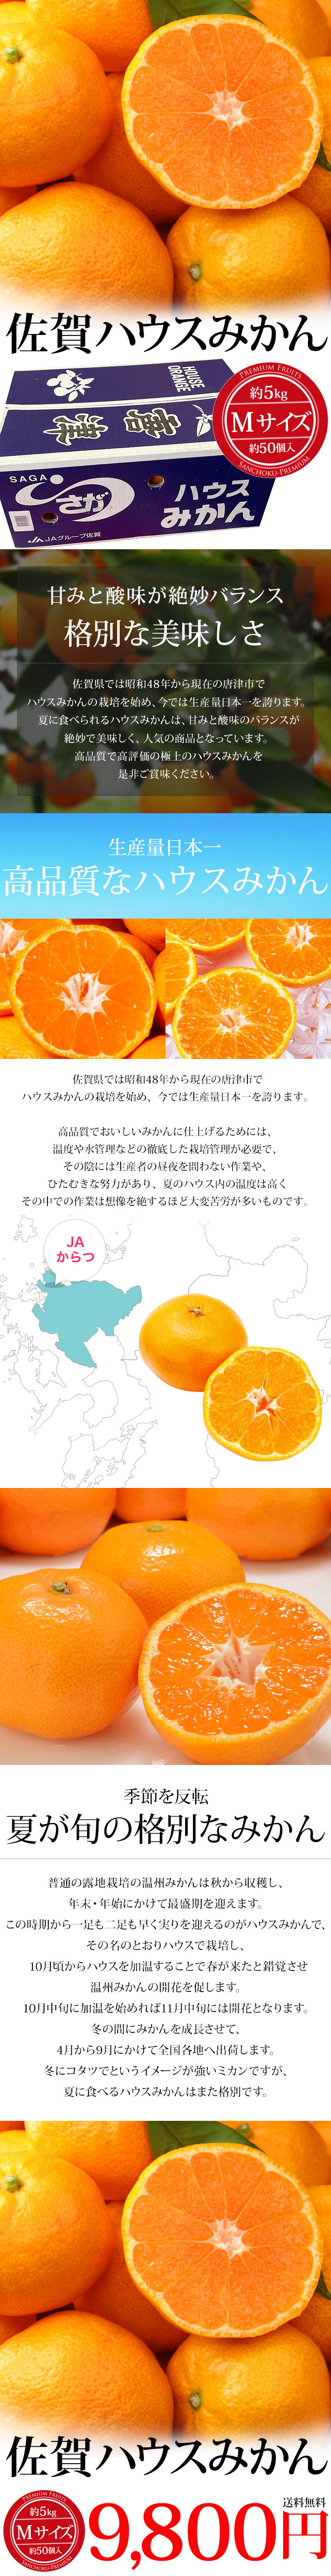 海外輸入海外輸入みかん 佐賀県産 佐賀ハウスみかん 約5kg Mサイズ 約50個 みかん、柑橘類